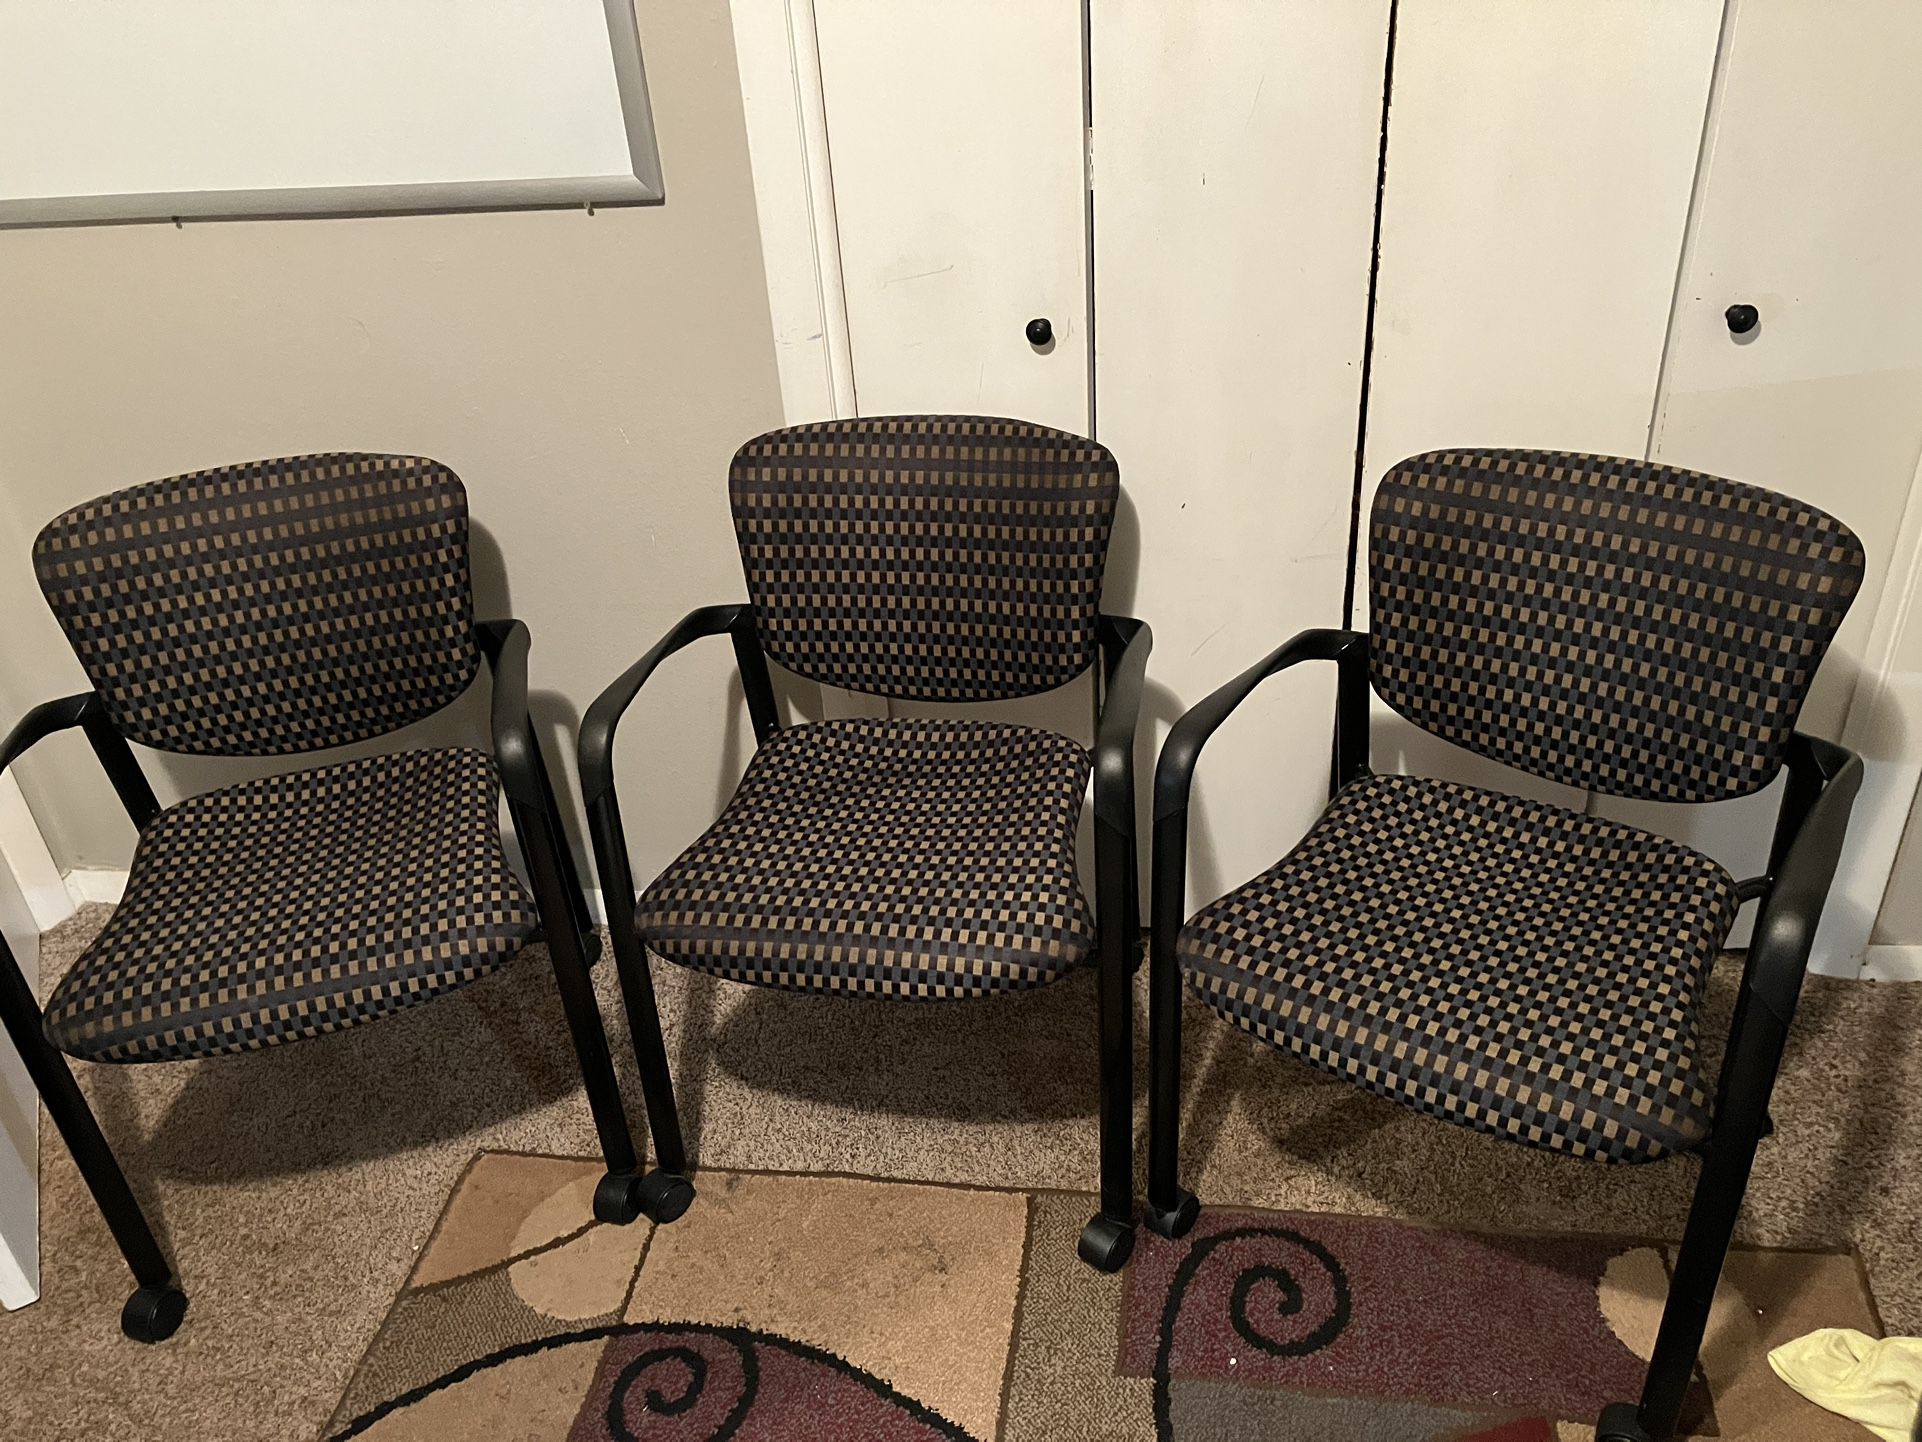 Haworth Improv Chair